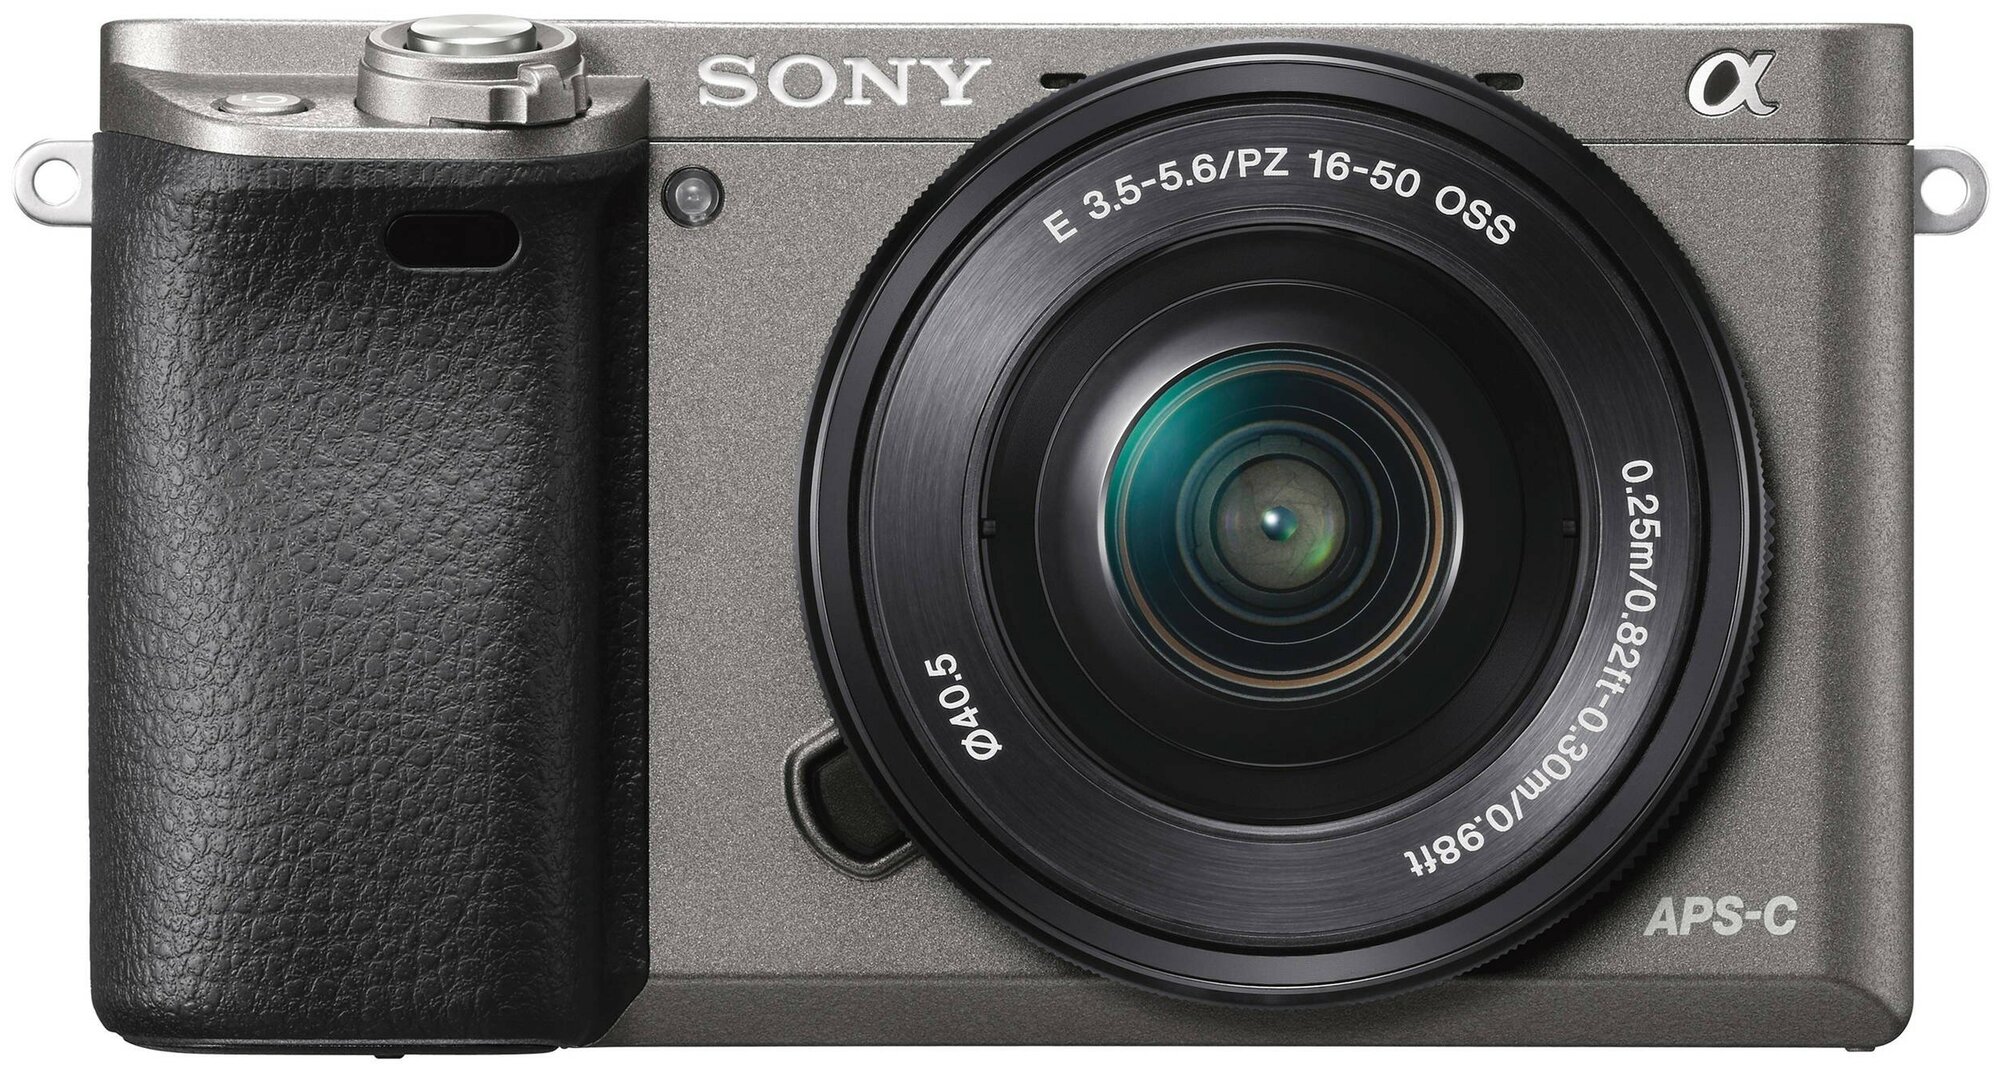  Sony Alpha ILCE-6000 Kit E PZ 16-50mm F3.5-5.6 OSS, 